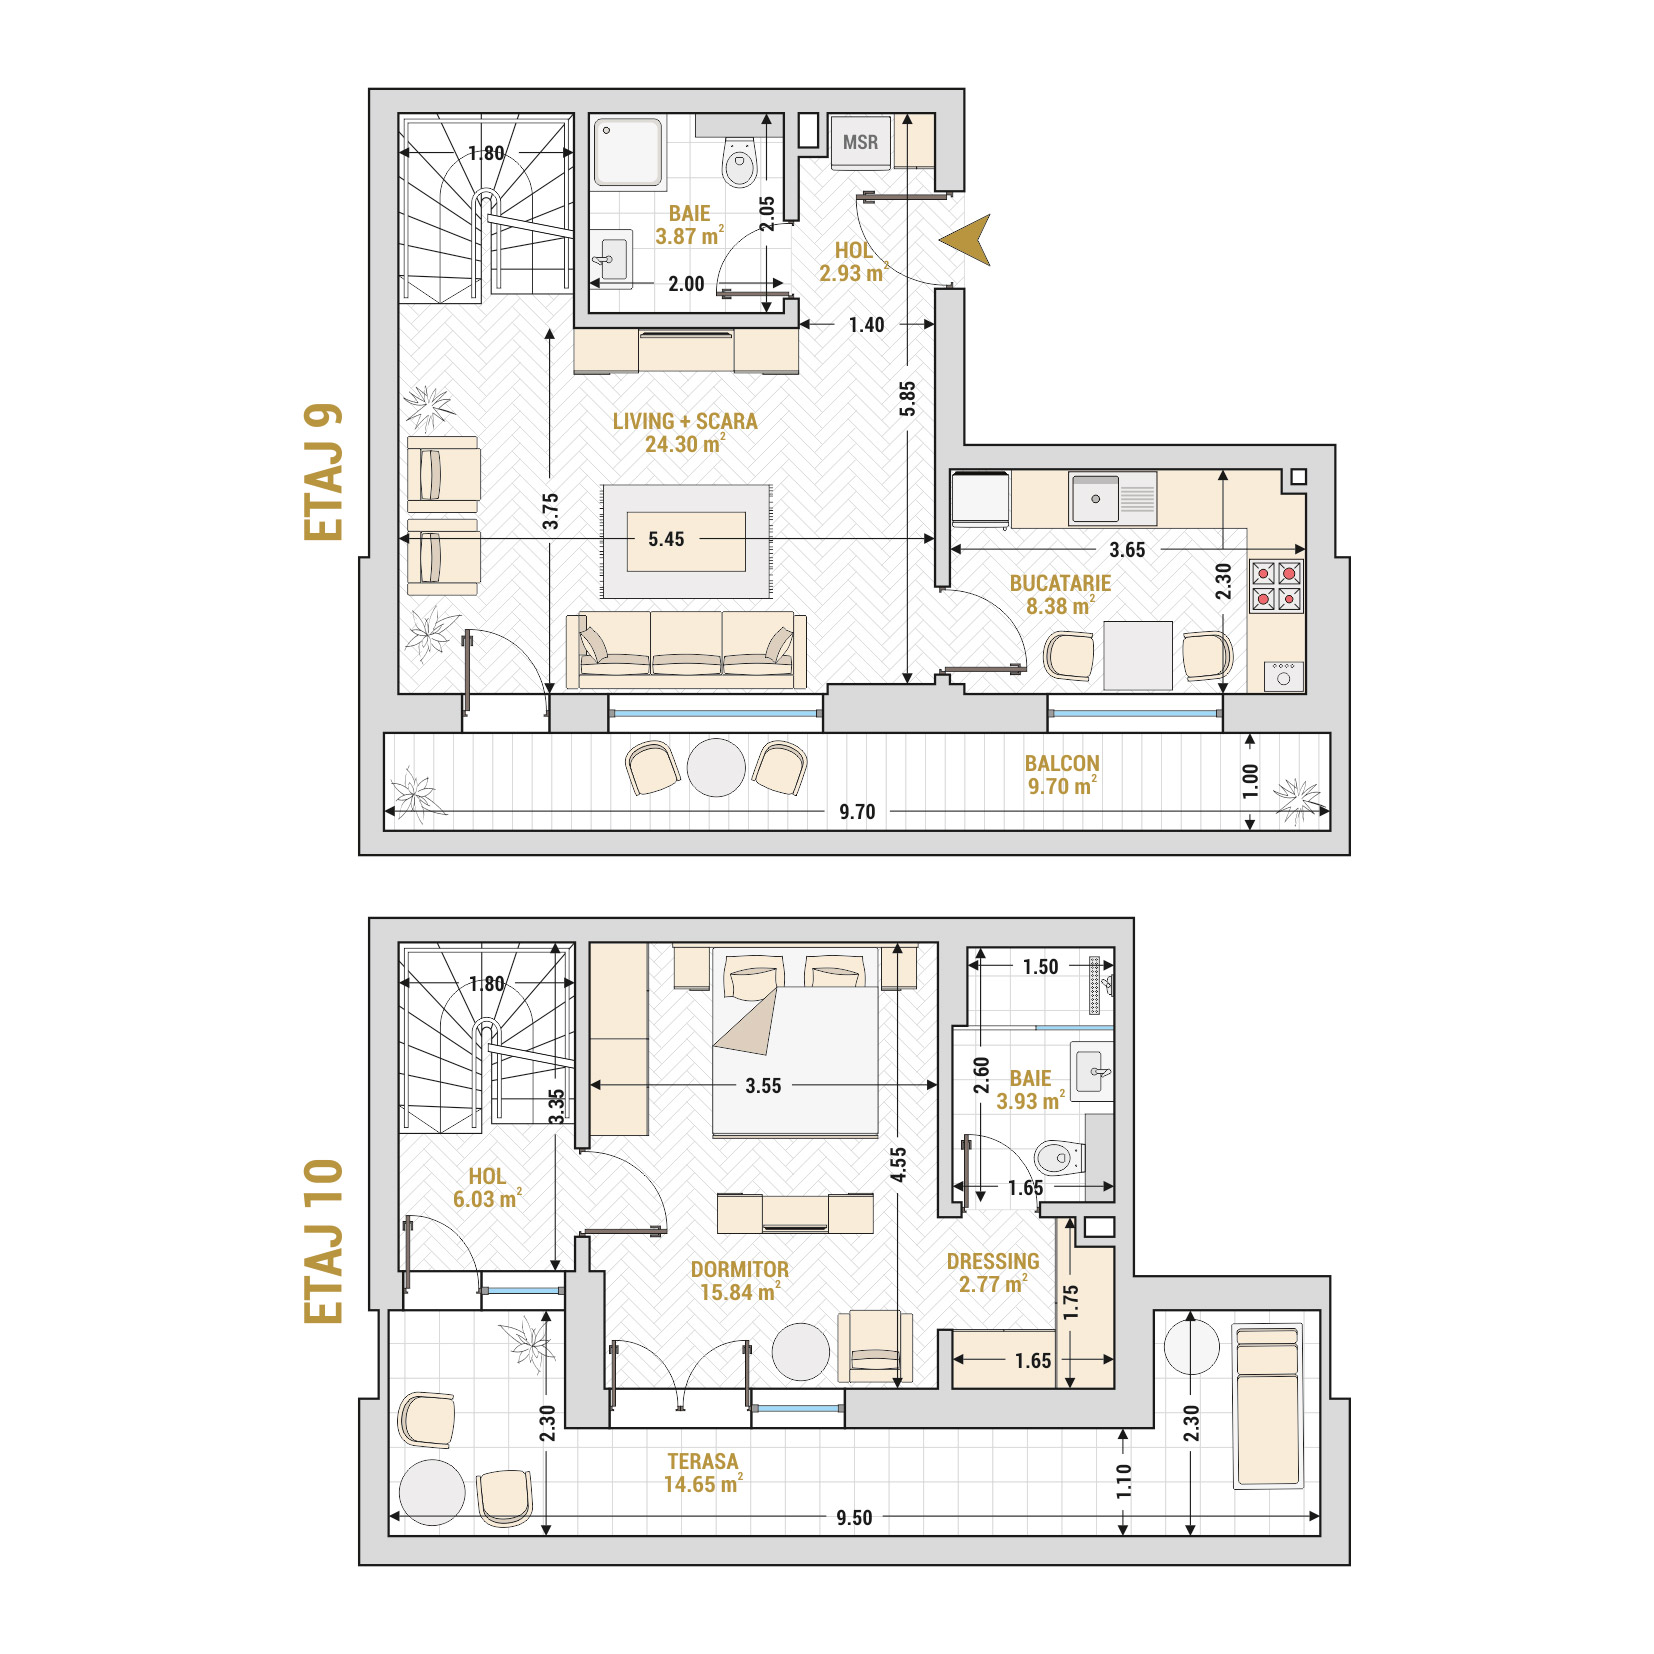 Penthouse 2 Camere Tip 3 Corp 3 - Drumul Taberei Residence - Apartamente de vanzare Bucuresti - Suprafata utila totala - 92.40 mp